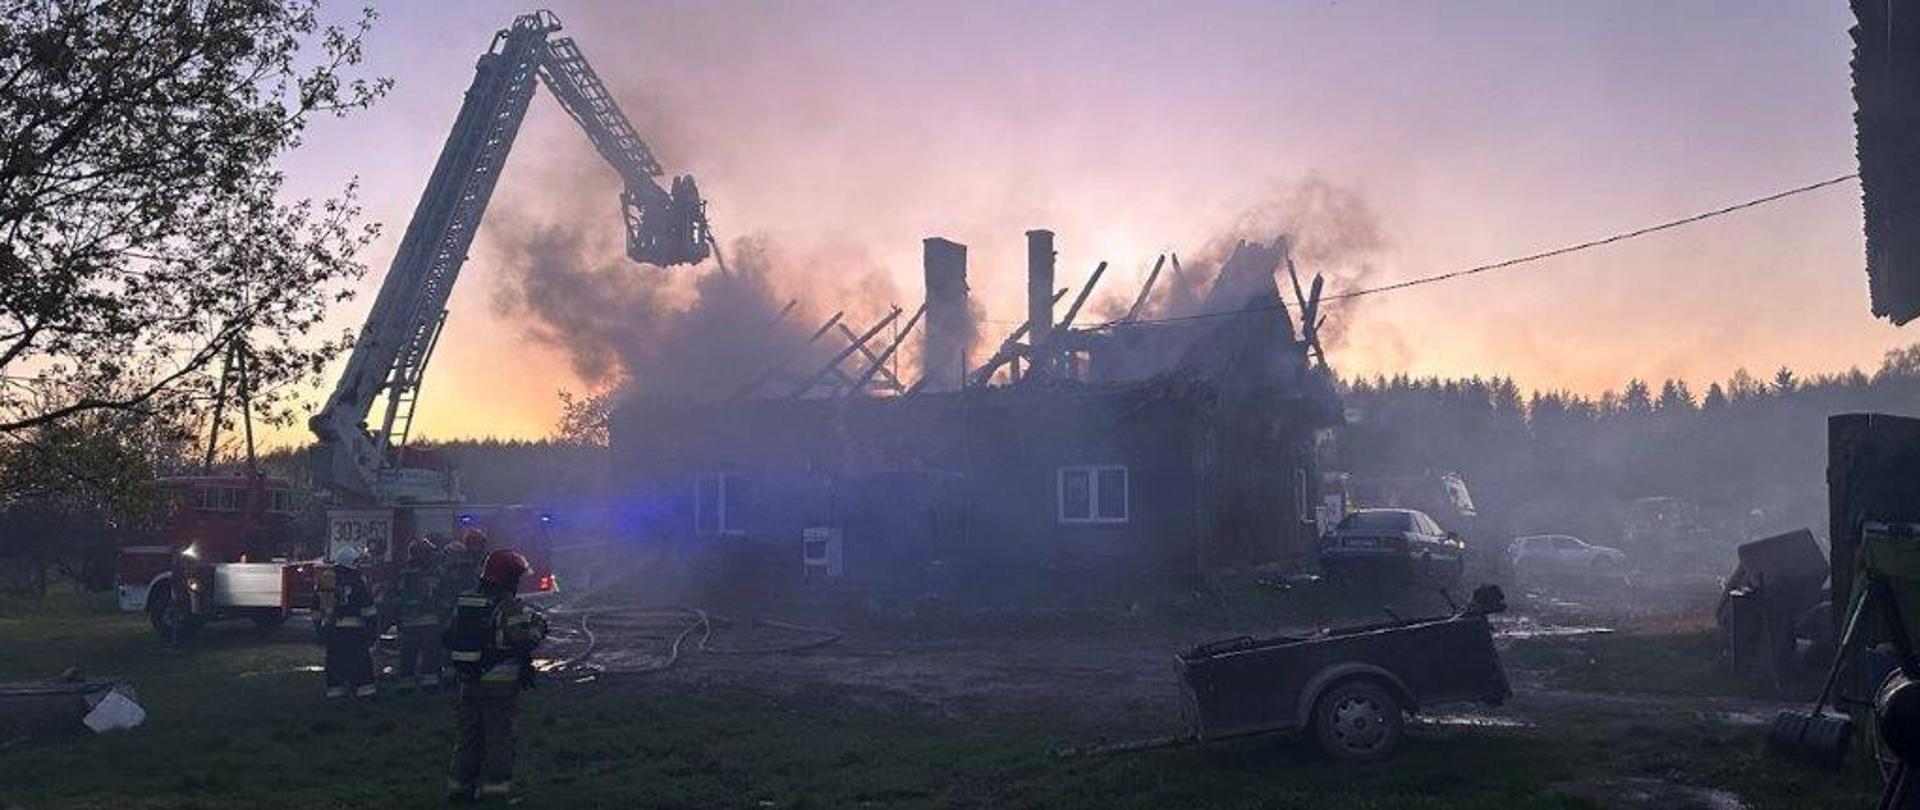 Pożar budynku mieszkalnego w Biesowie